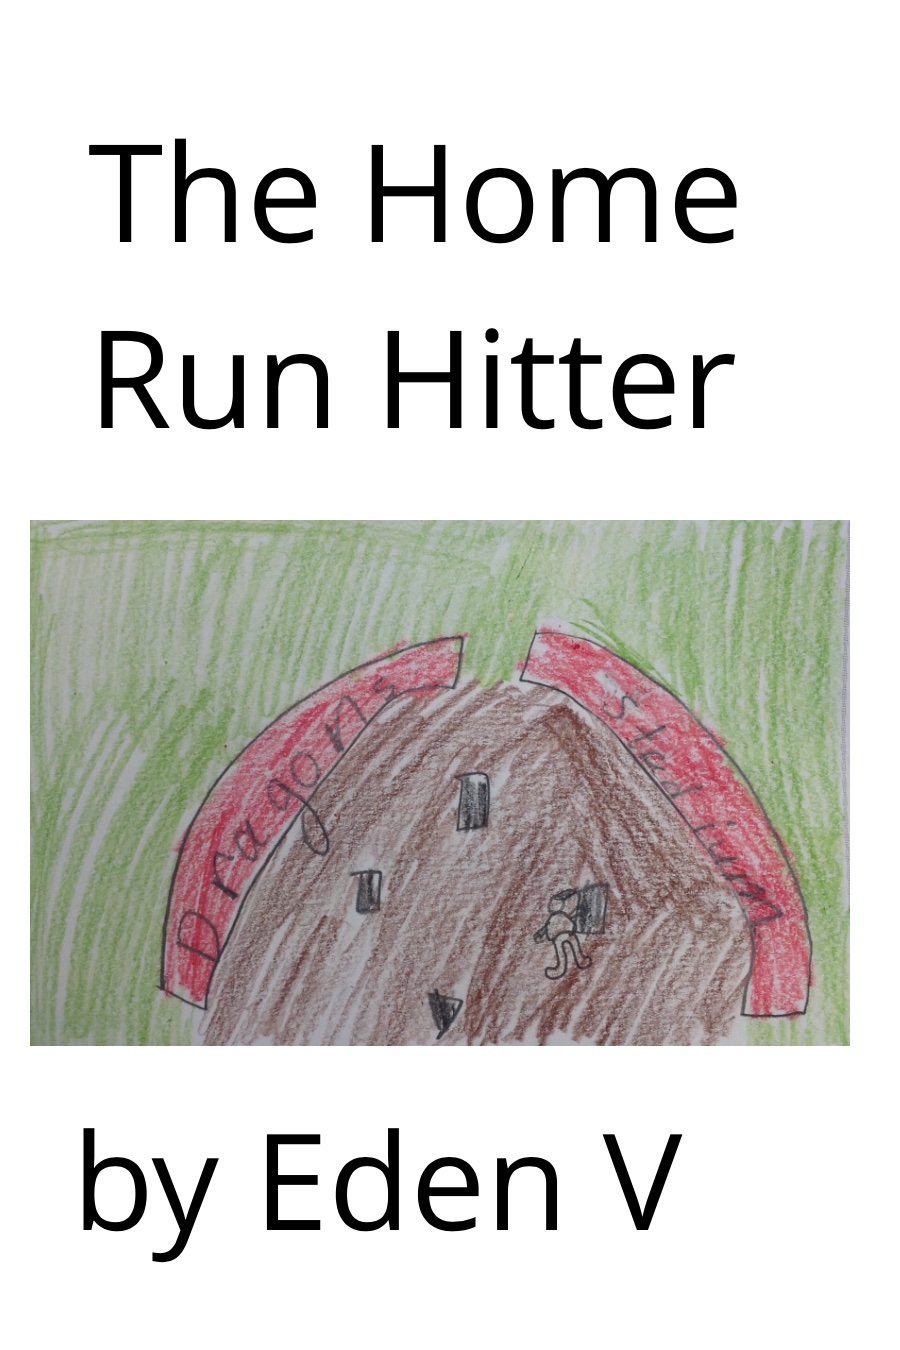 The Home Run Hitter by Eden V